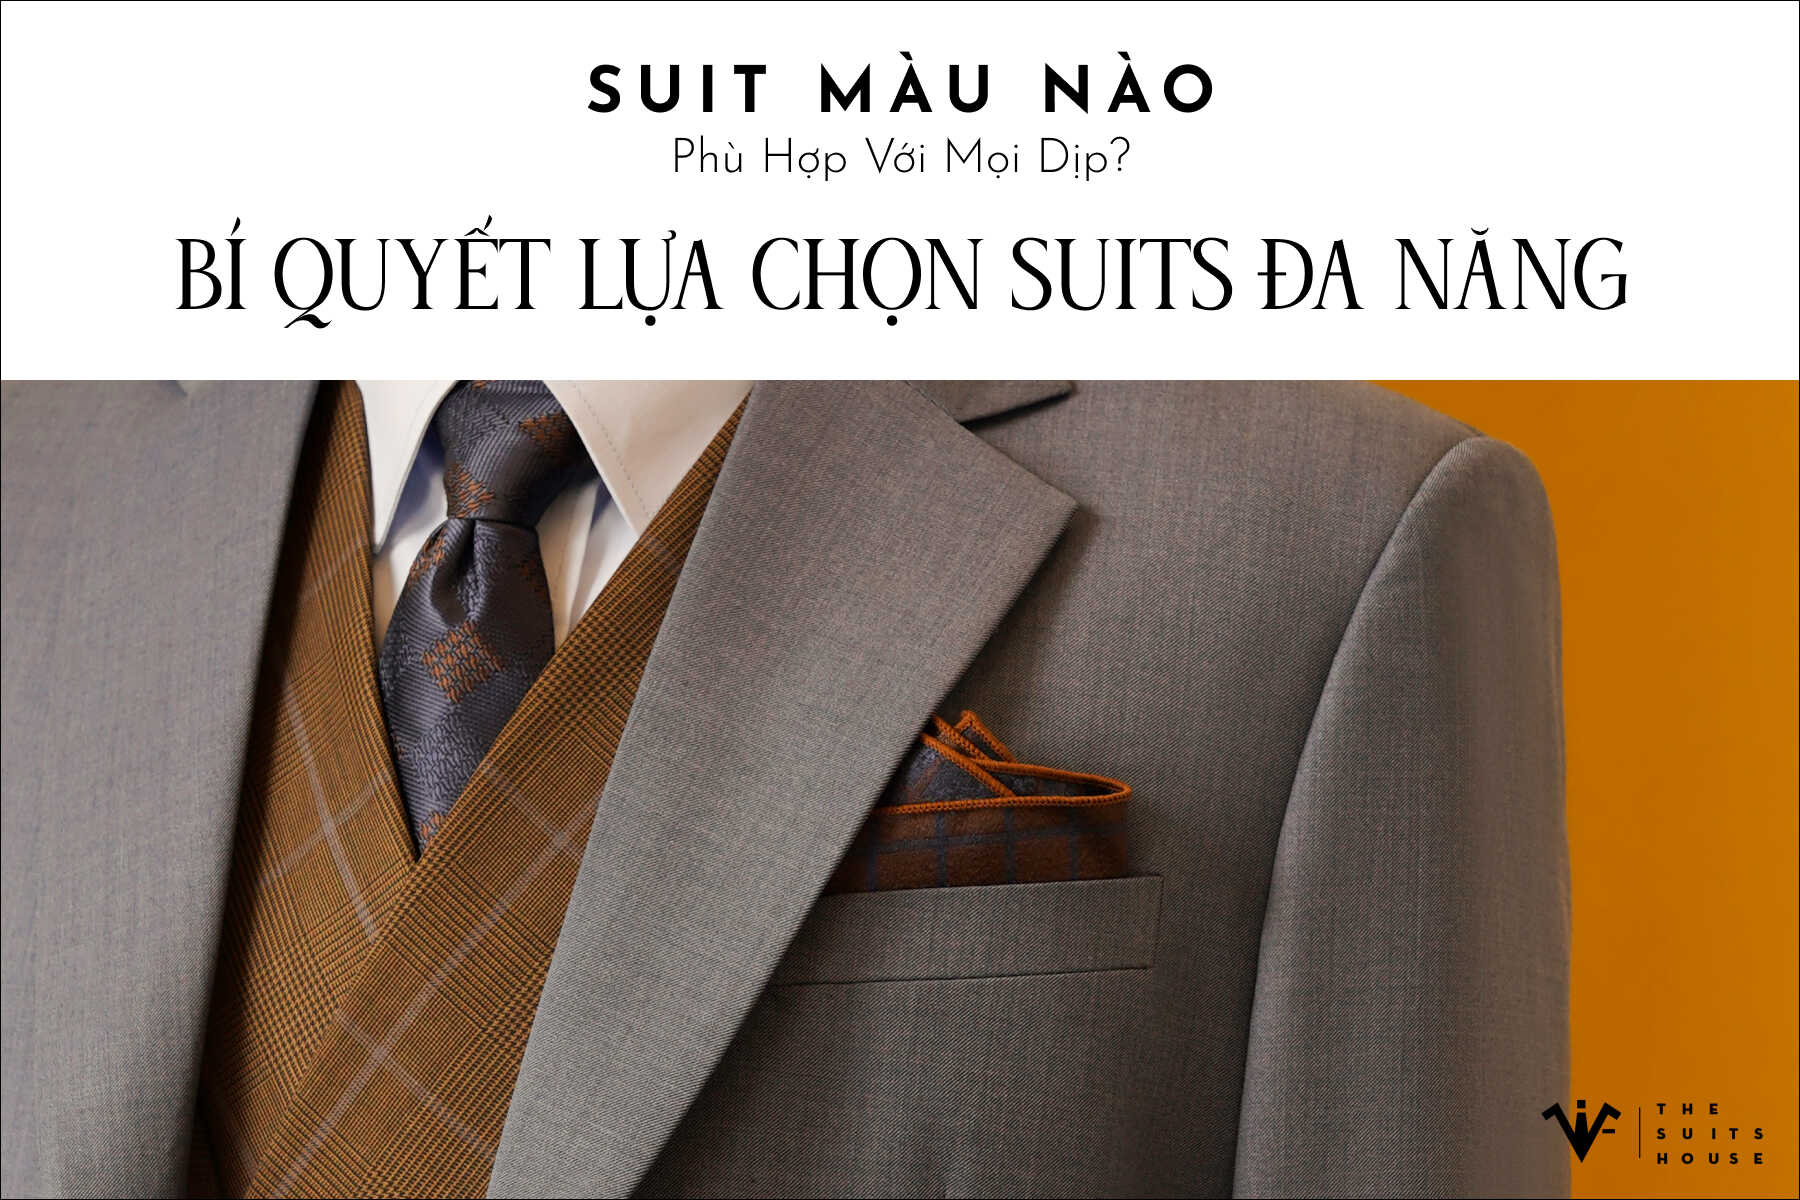 Suit Màu Nào Phù Hợp Với Mọi Dịp? Bí Quyết Lựa Chọn Suits Đa Năng